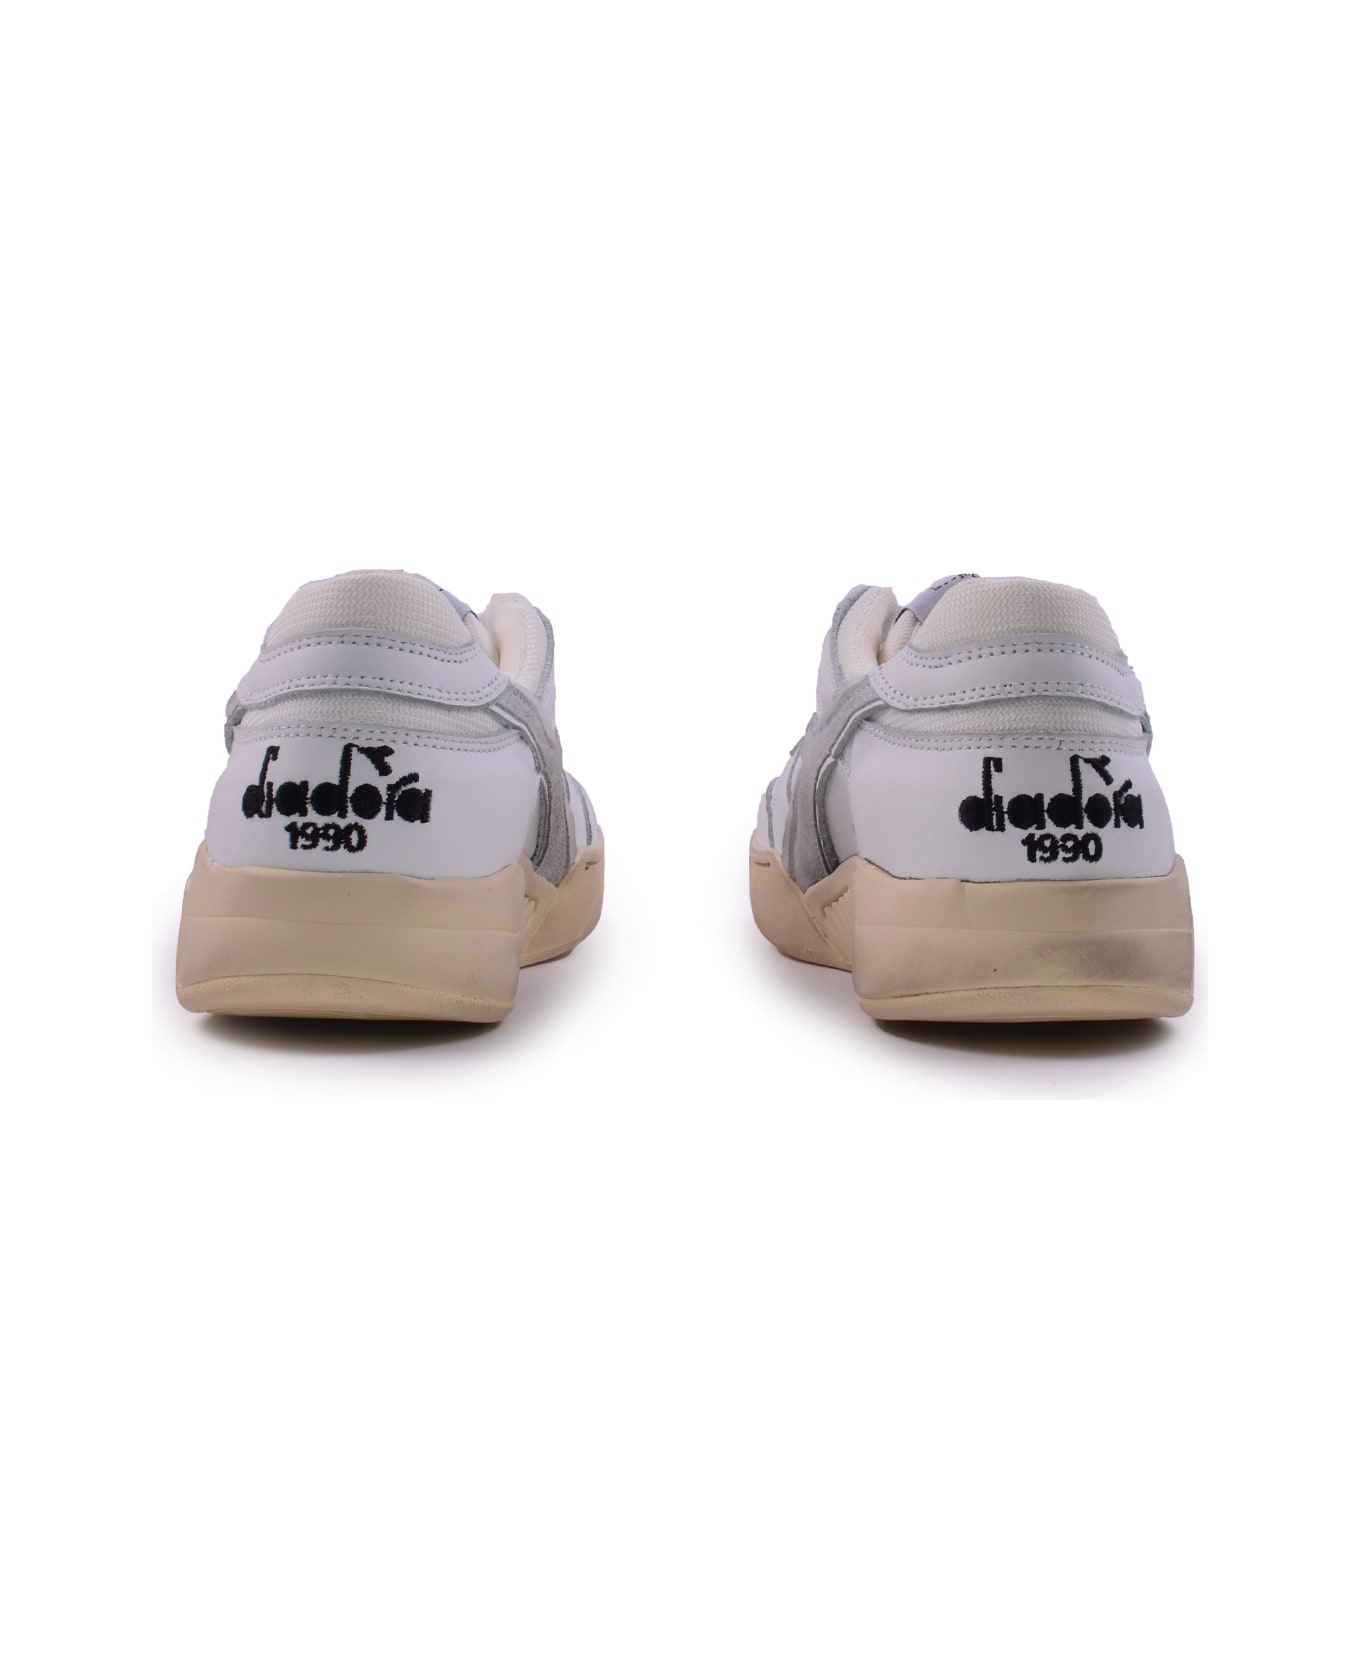 Diadora Heritage Sneakers - White